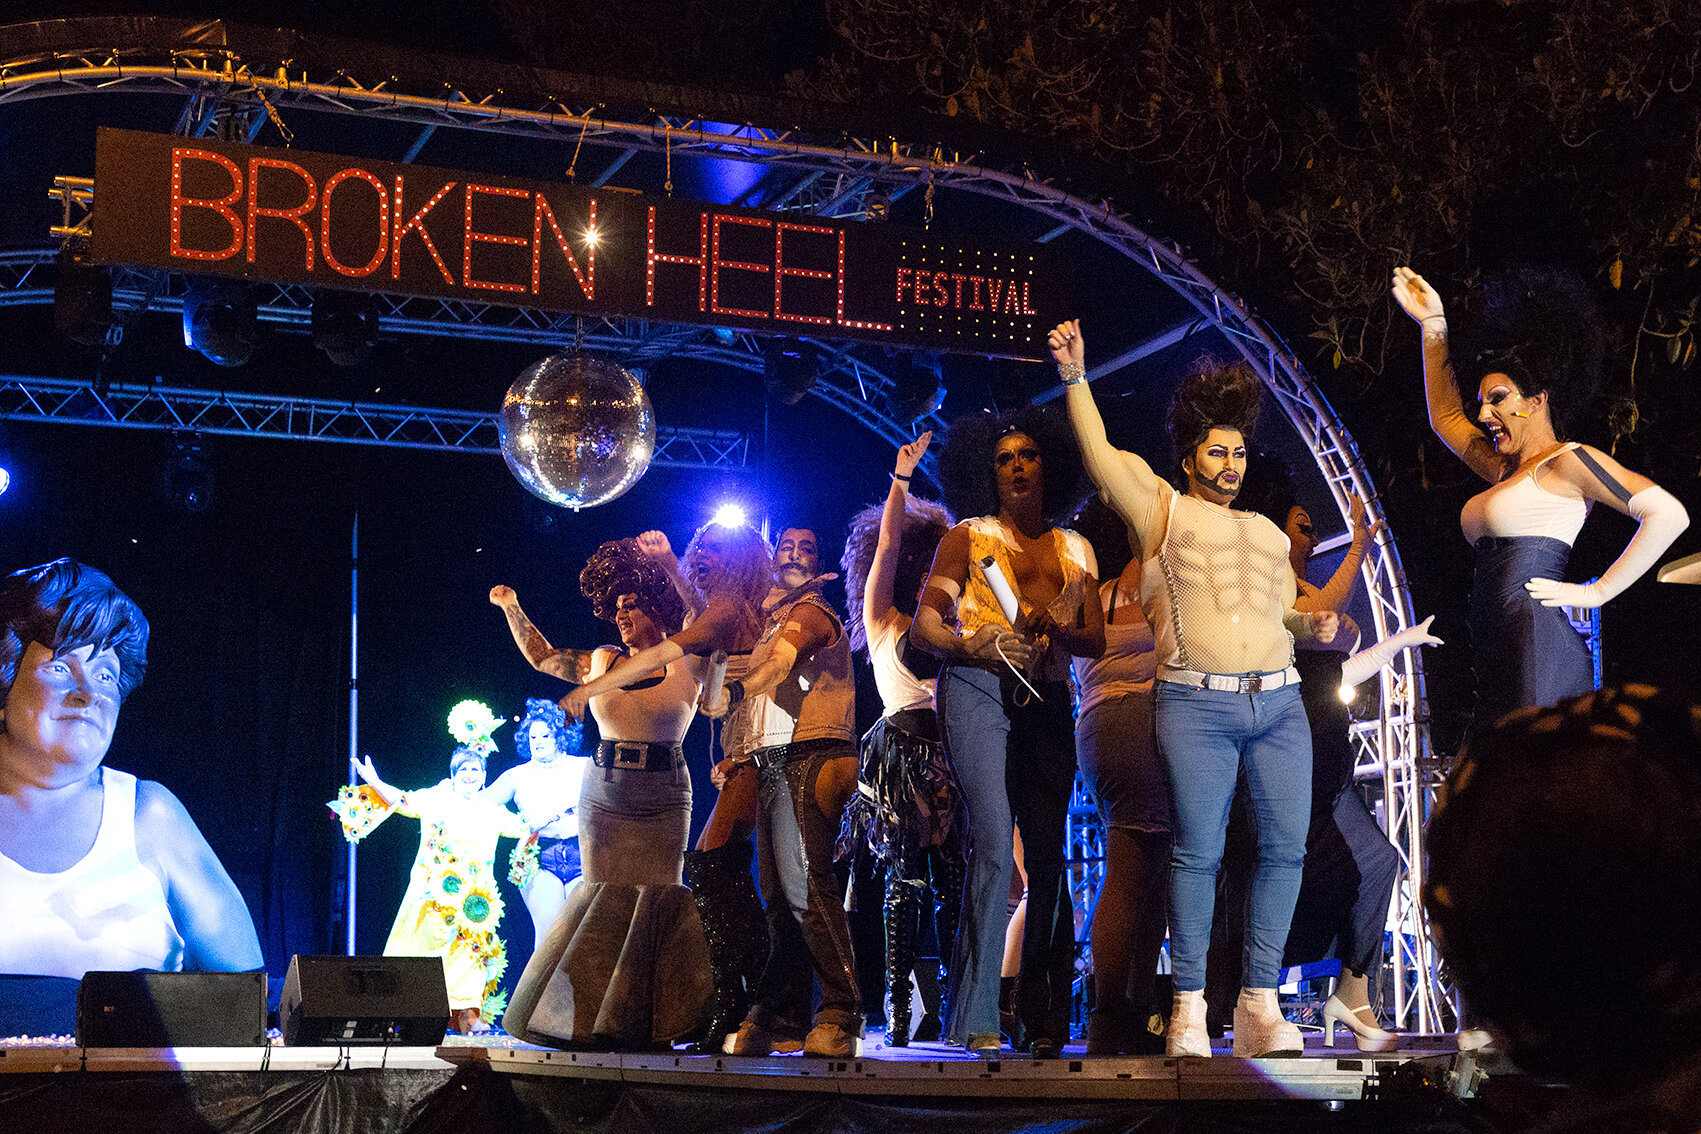 Broken Heel Festival 2019